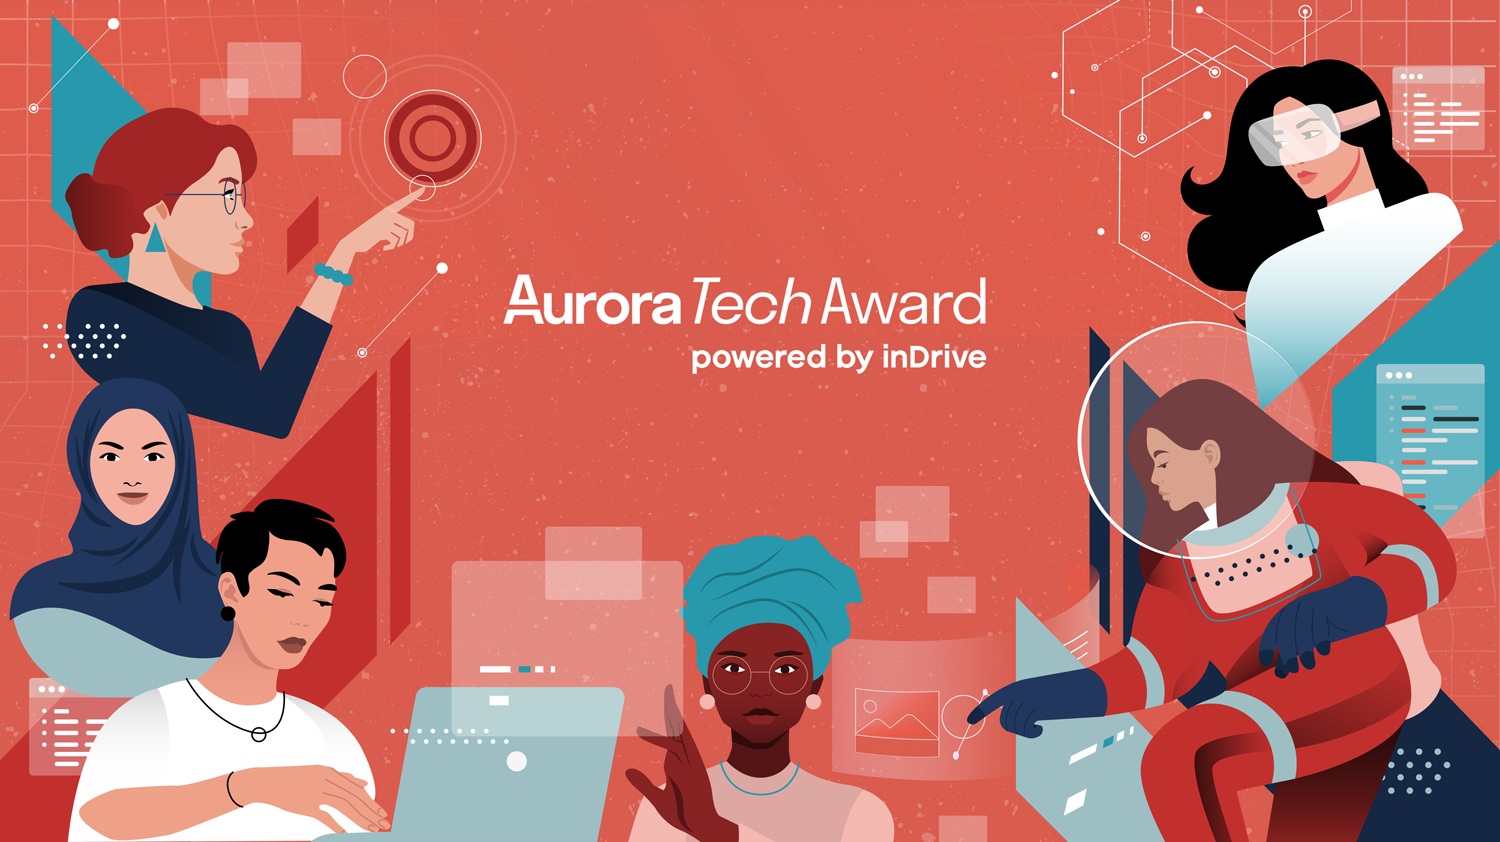 El jurado estará compuesto por expertas de TI y las ganadoras del Aurora Tech Award del año pasado.